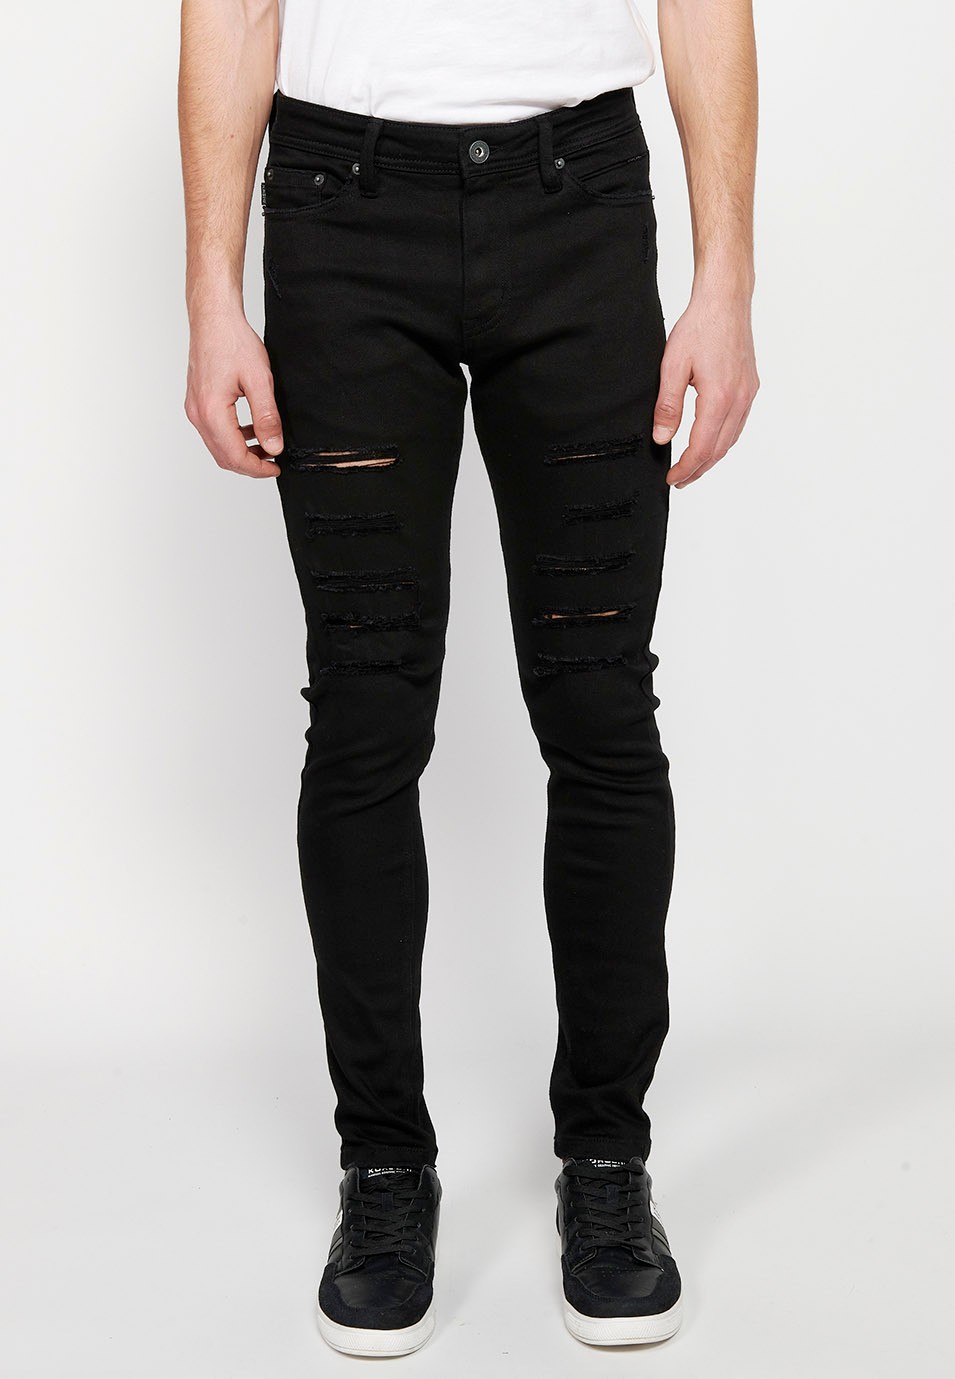 Pantalons texans llarg slim super skinny amb Tancament davanter amb cremallera i botó de Color Denim Negre per a Home 3